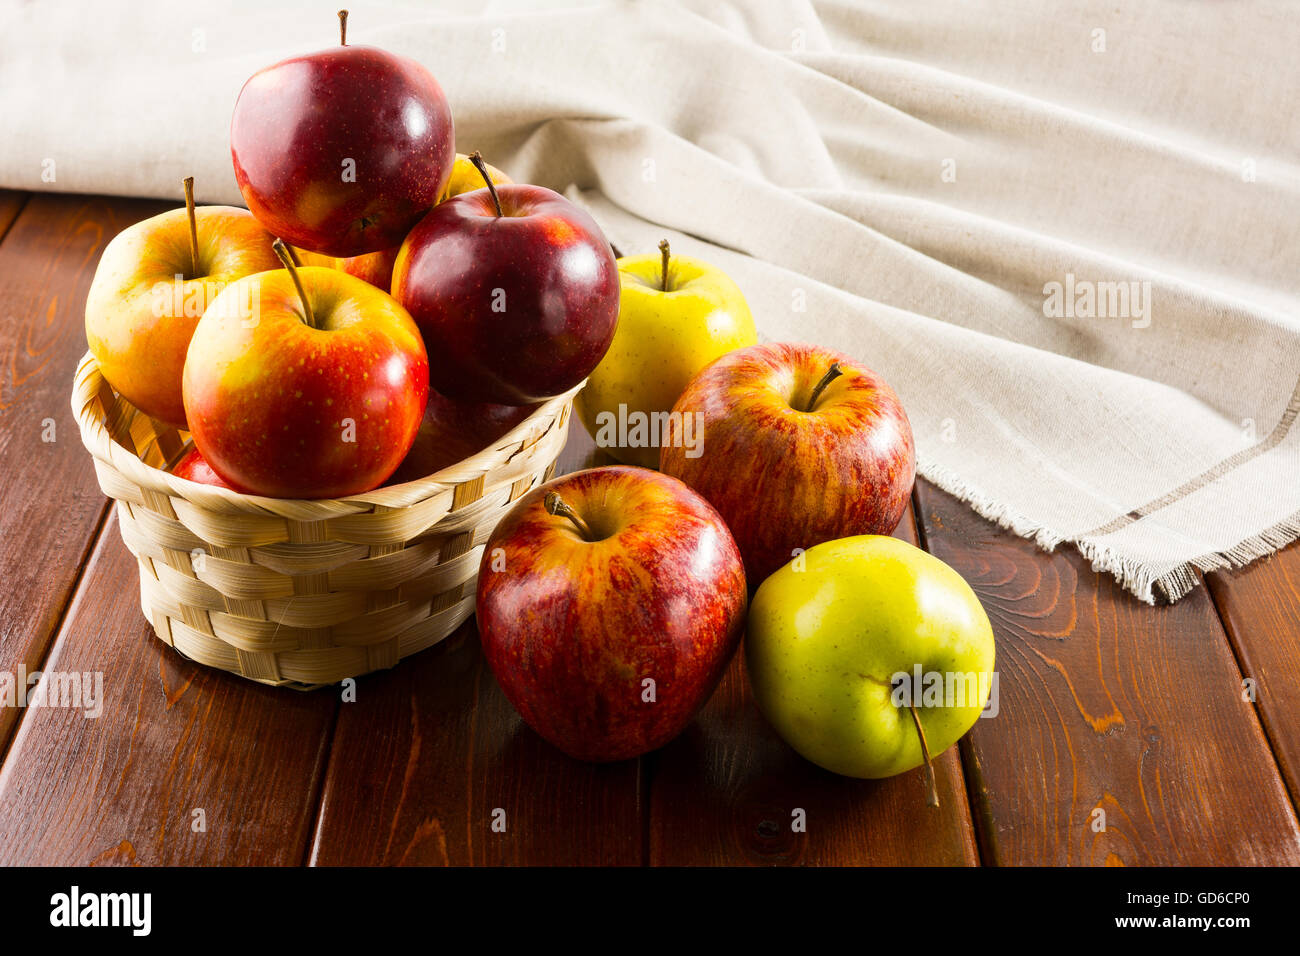 Le mele nel Piccolo cesto di vimini sul legno scuro dello sfondo. Mangiare sano concetto con frutta fresca. Foto Stock